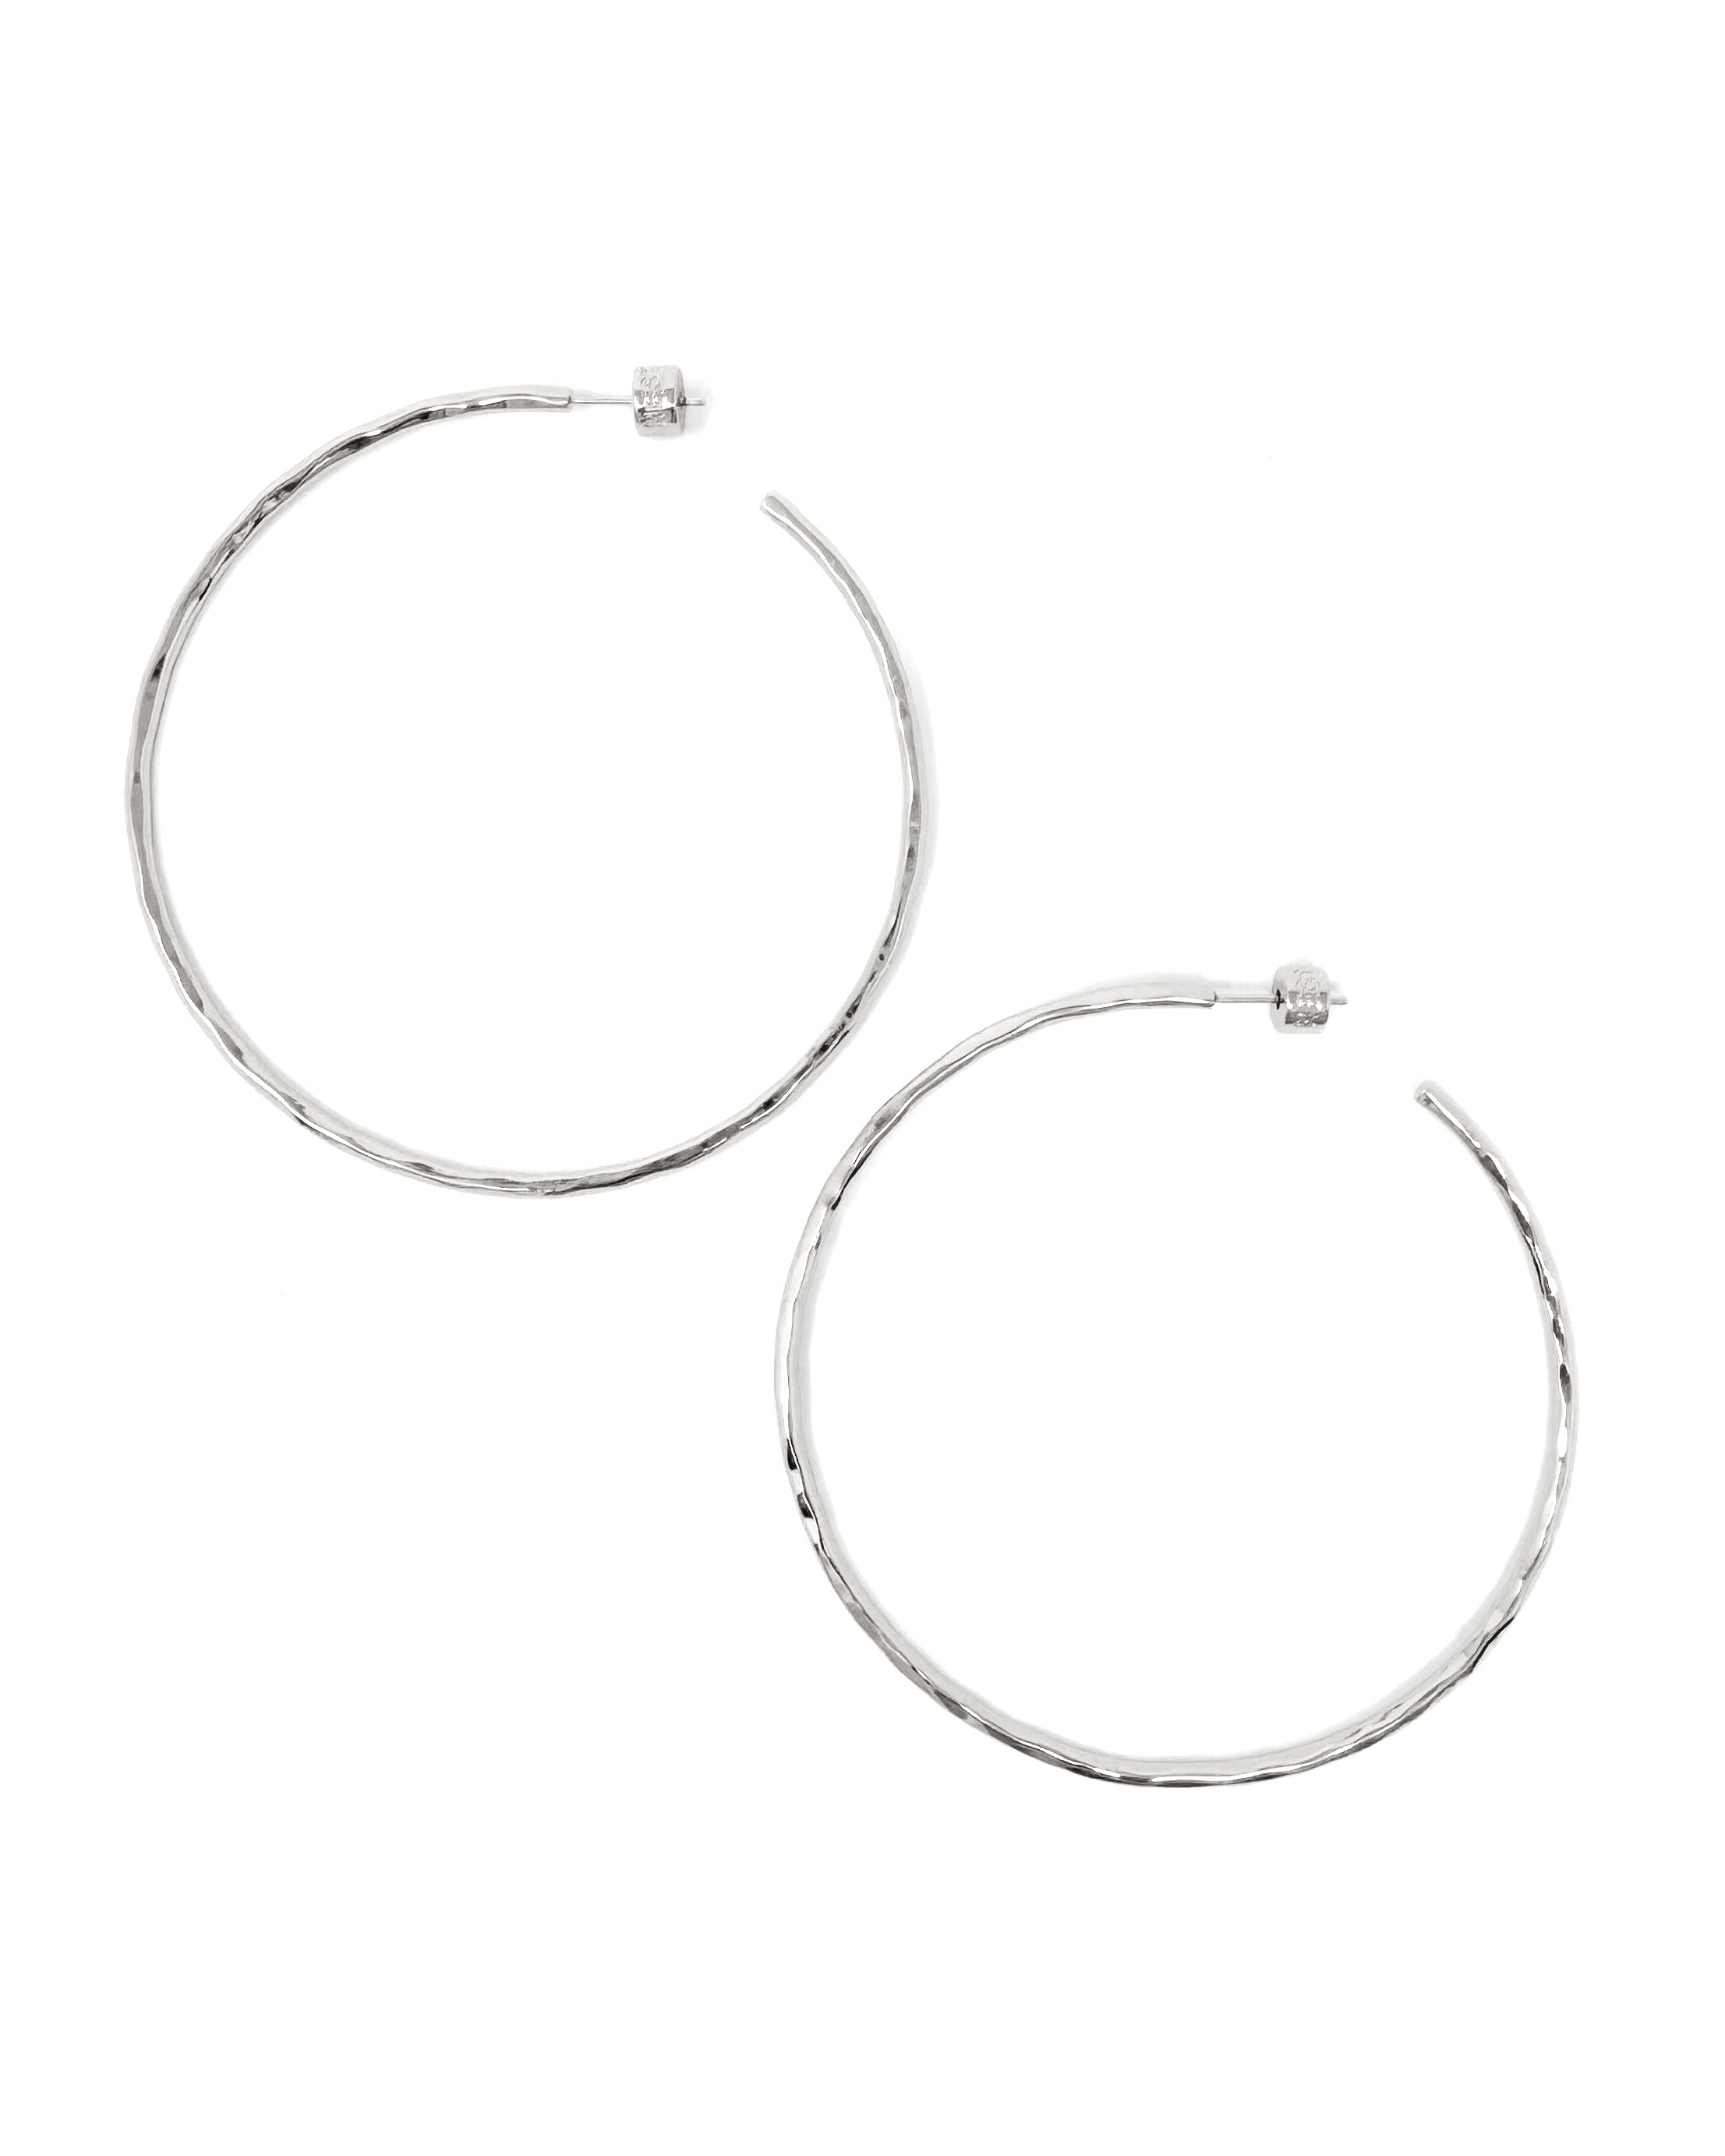 XL Hammered Silver Hoop Earrings